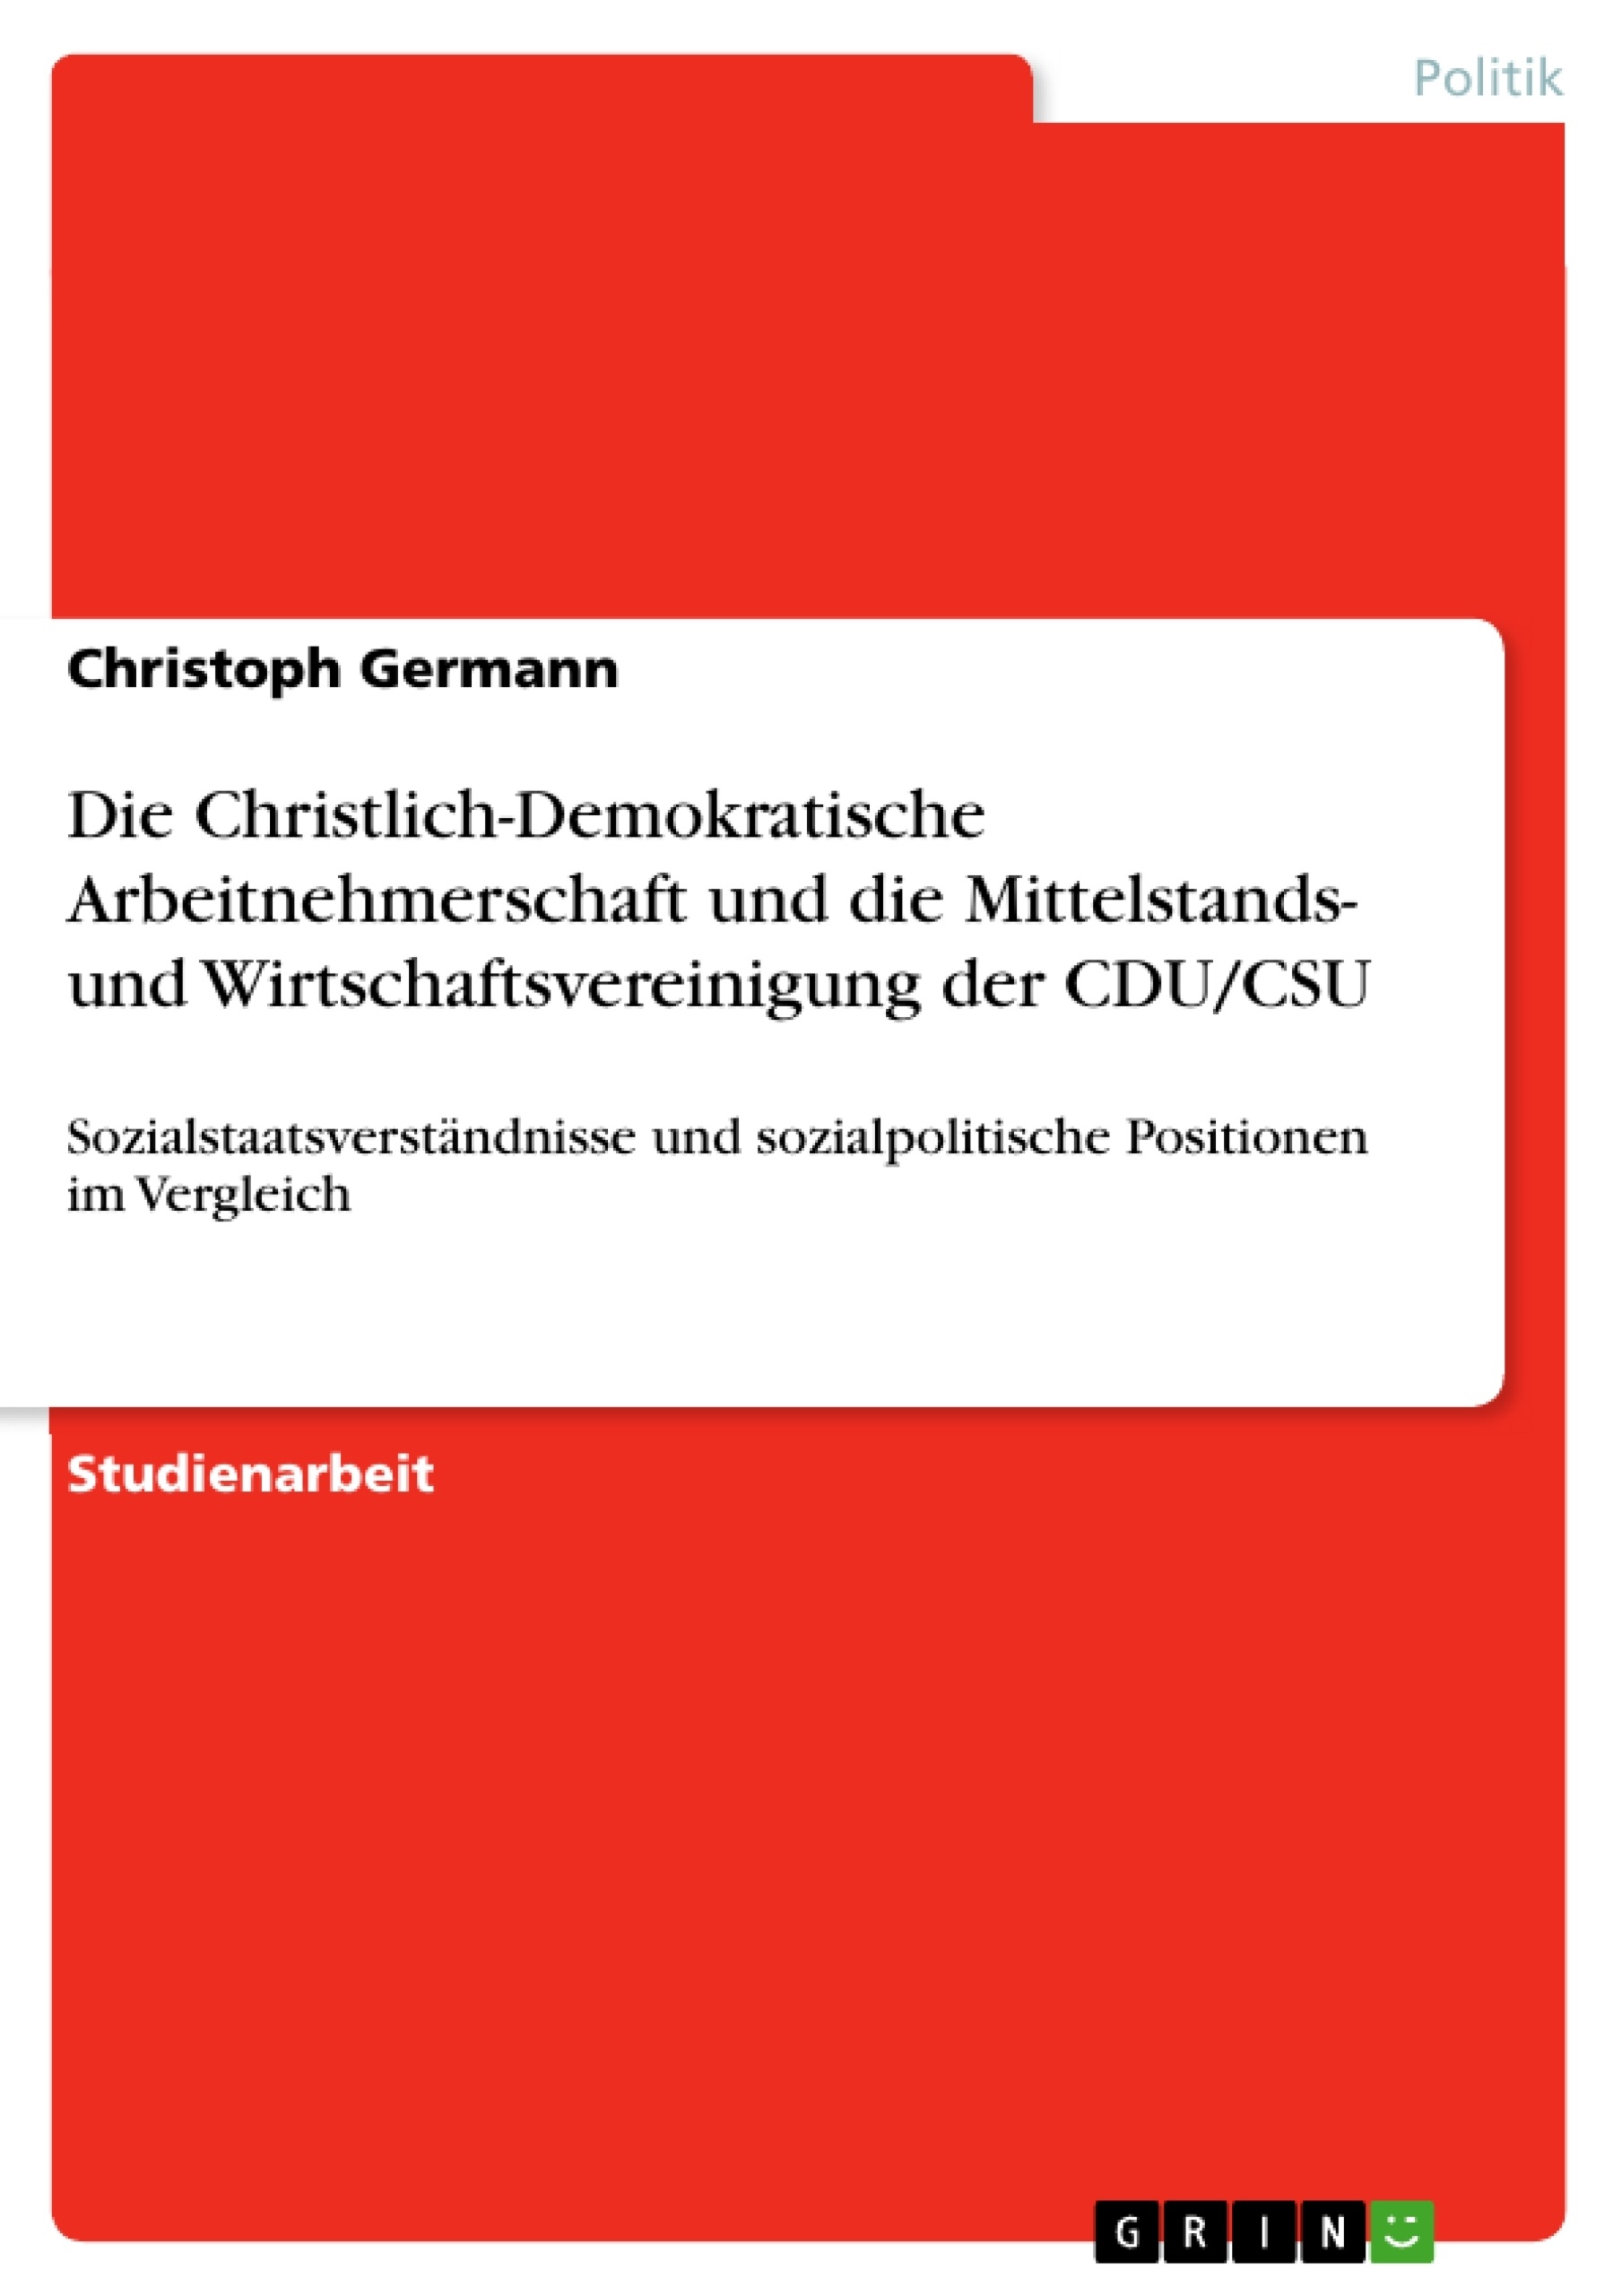 Título: Die Christlich-Demokratische Arbeitnehmerschaft und die Mittelstands- und Wirtschaftsvereinigung der CDU/CSU